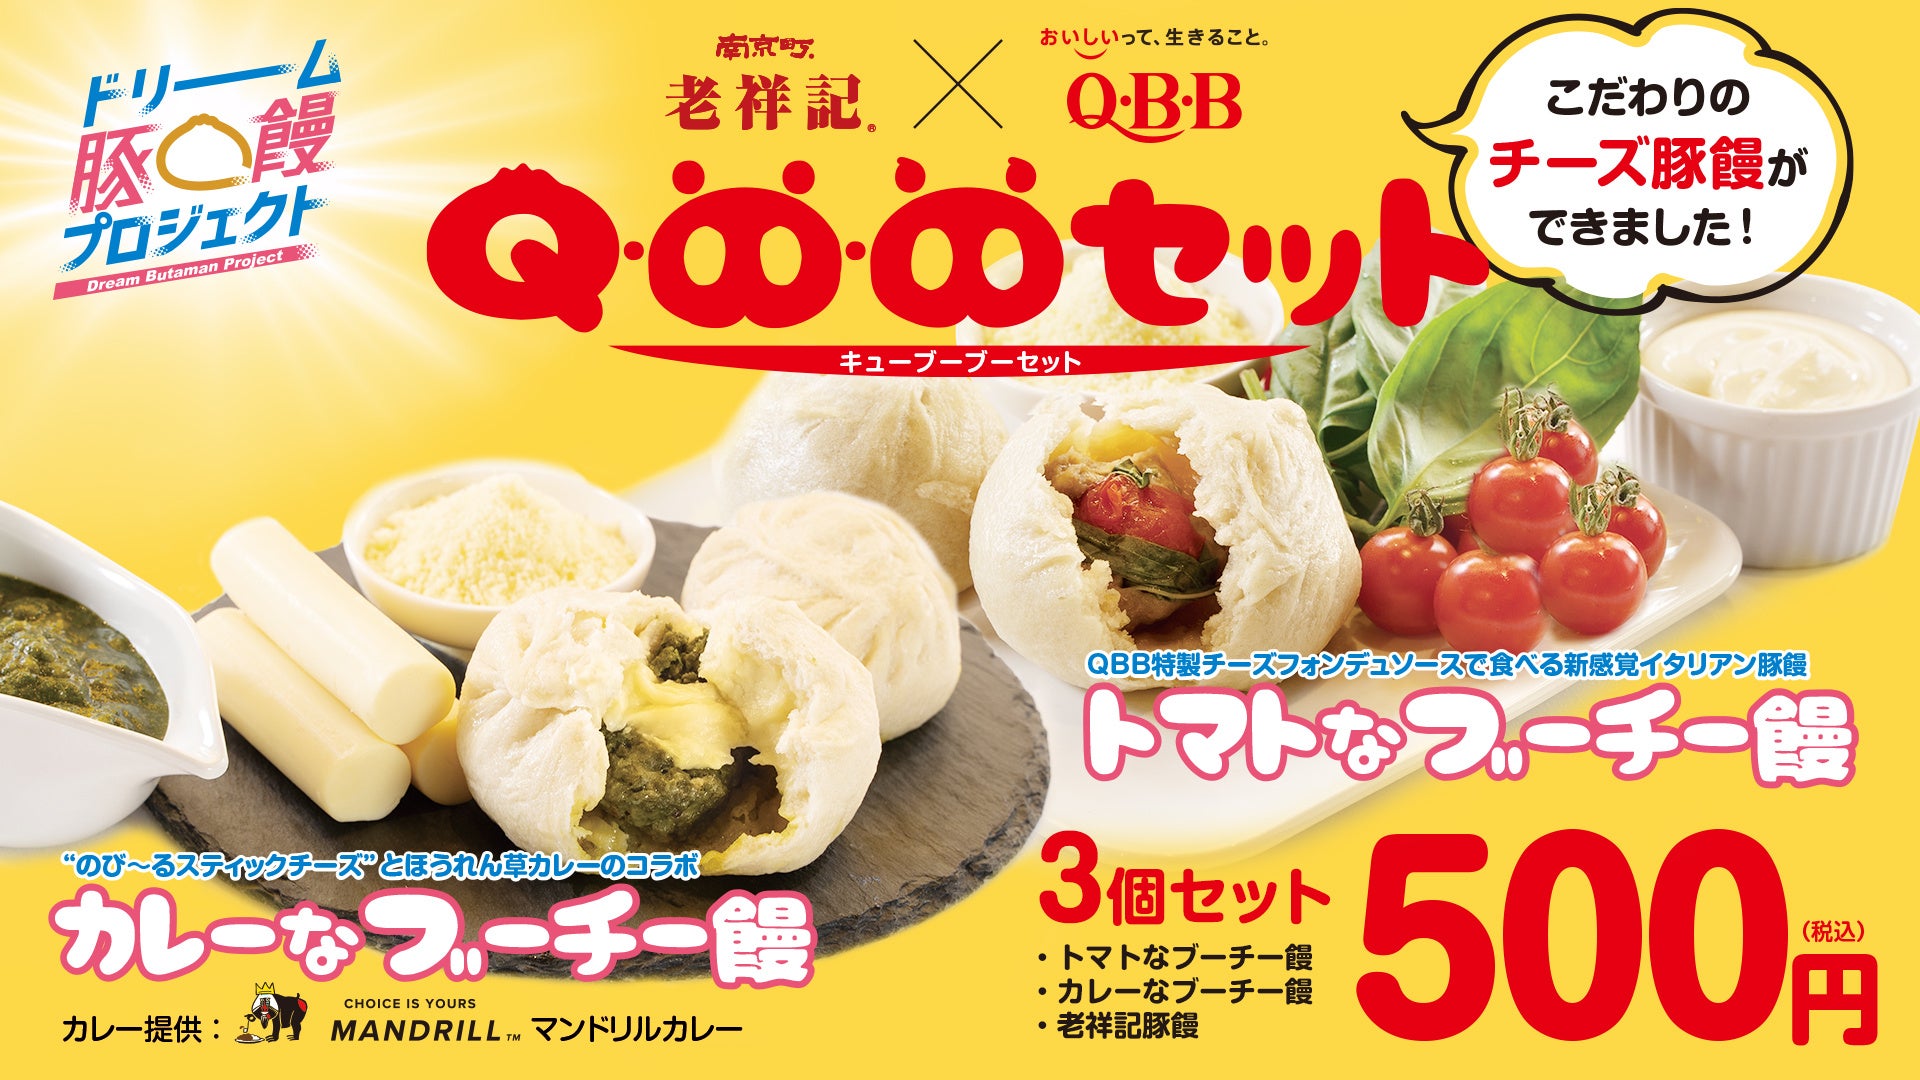 【神戸市】元祖豚饅頭 「老祥記」と、神戸を代表するチーズメーカー QBBでお馴染みの「六甲バター」がコラボレーション! ~豚饅とチーズが満を持して、夢の共演~のサブ画像2